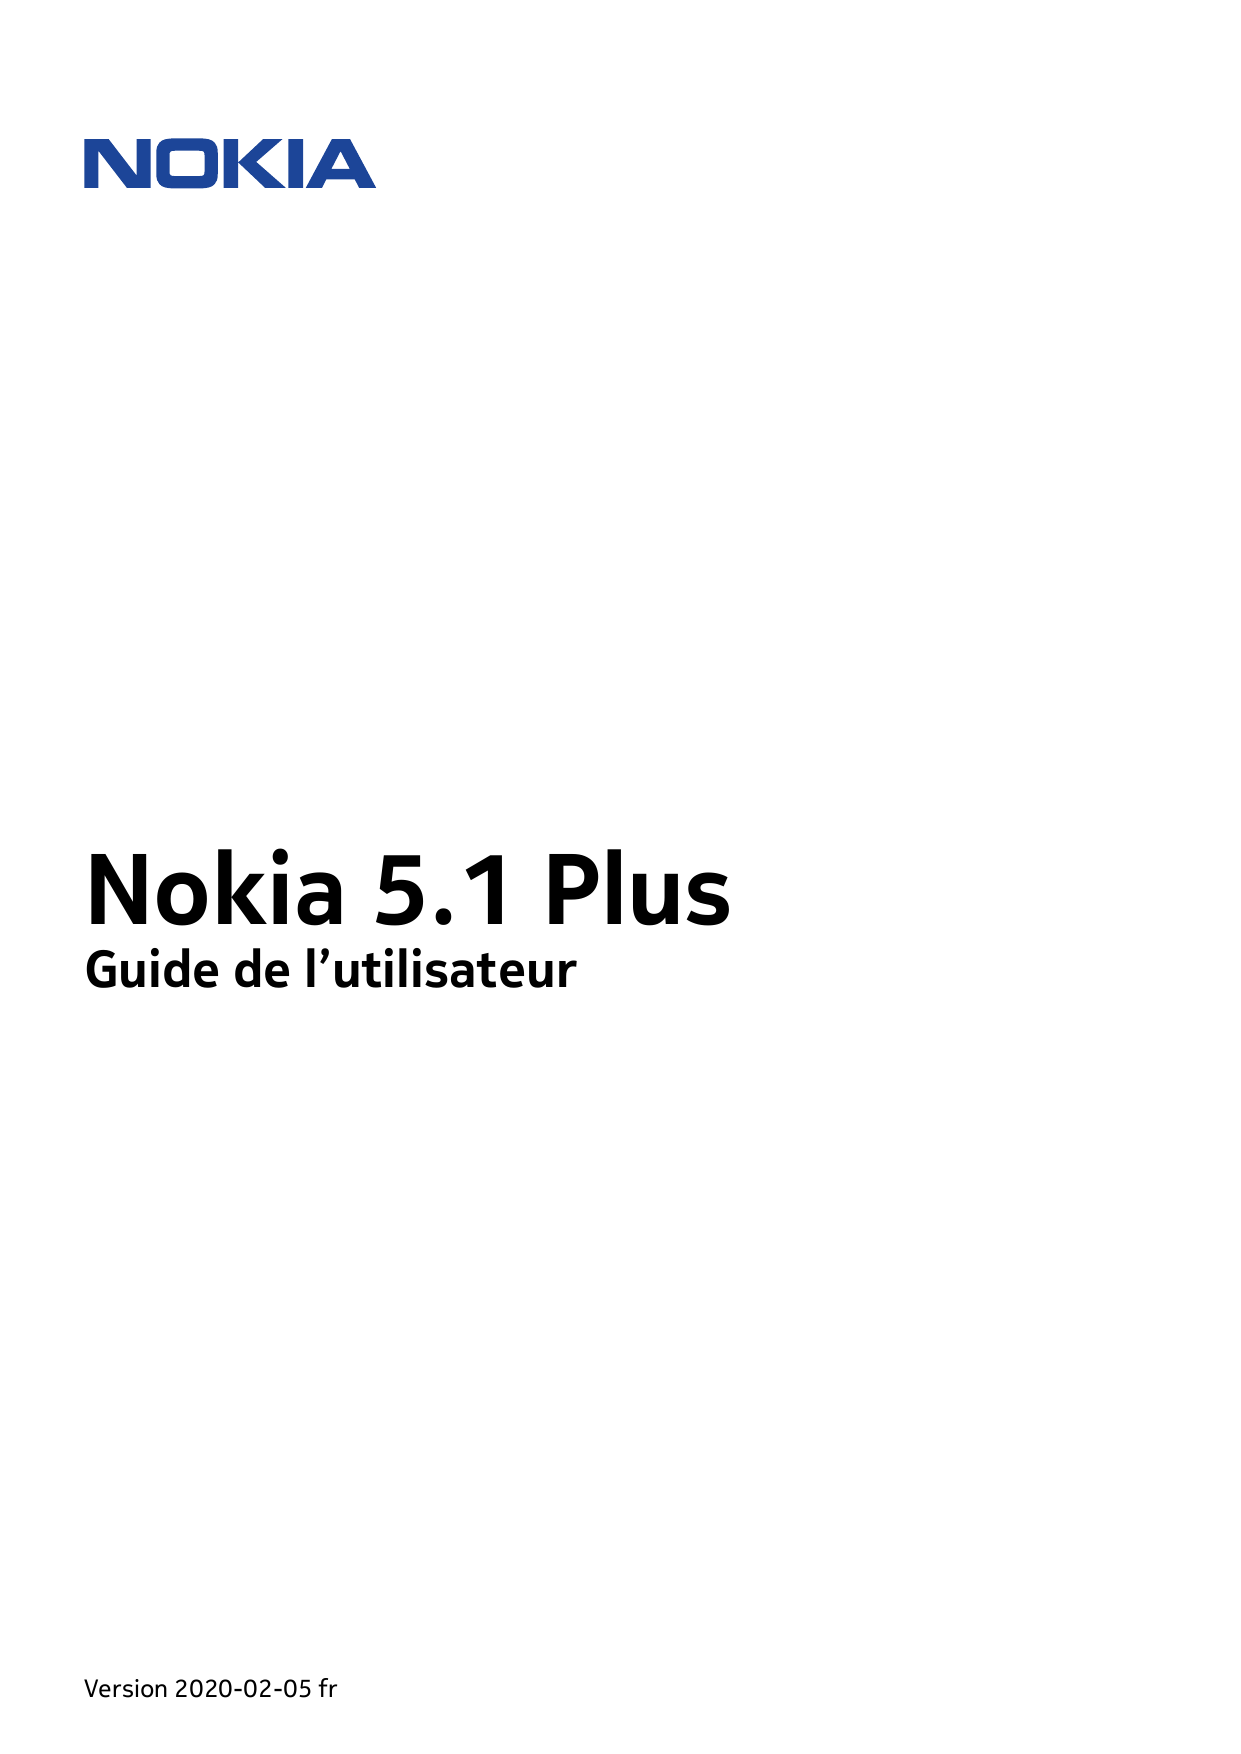 Nokia 5.1 PlusGuide de l’utilisateurVersion 2020-02-05 fr